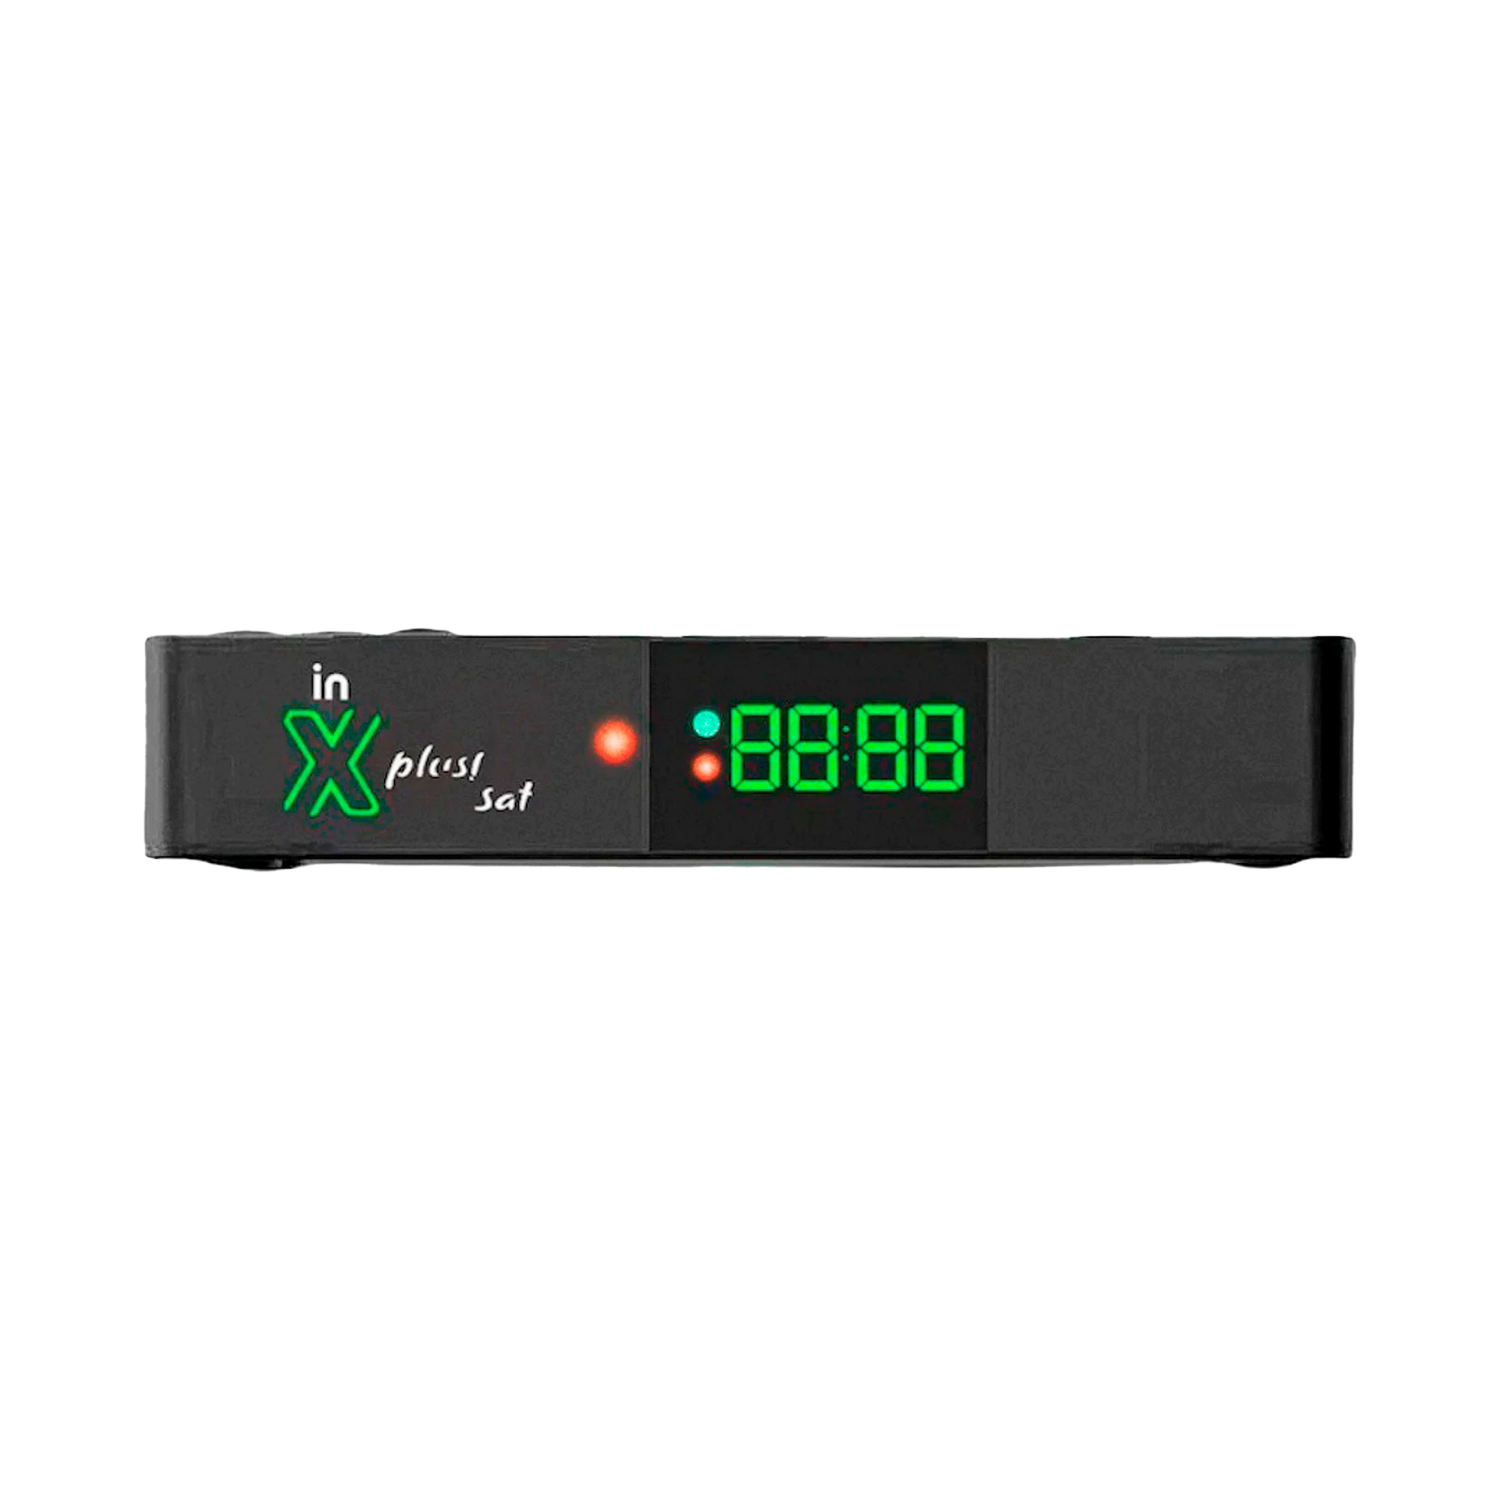 Receptor Interbras XPLUS SAT Full HD 16GB 2GB RAM Wi-Fi - Preto